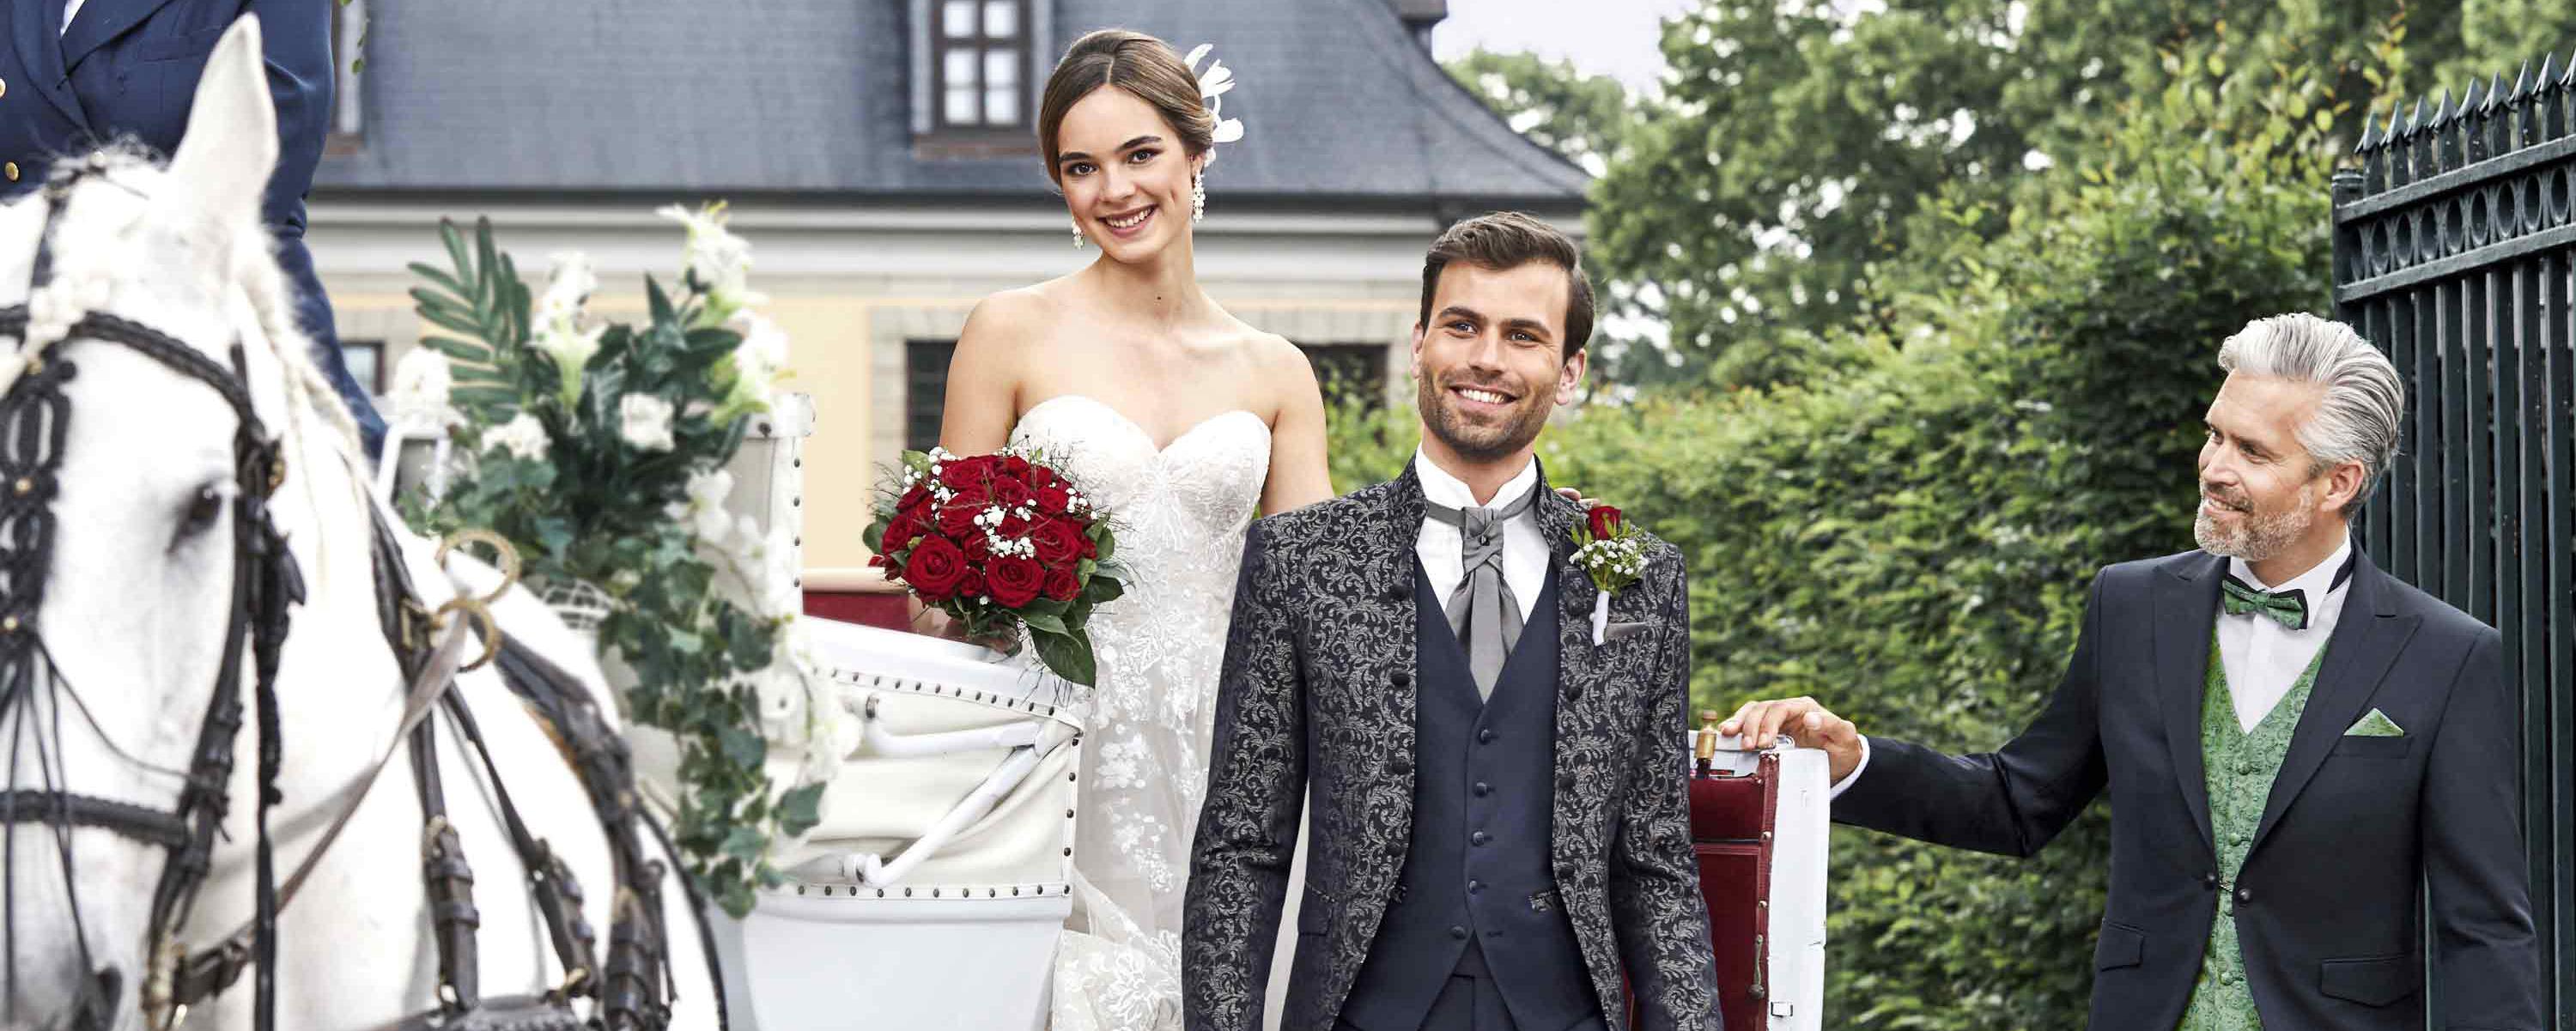 Stilvolle Hochzeitsmode und festliche Kleidung